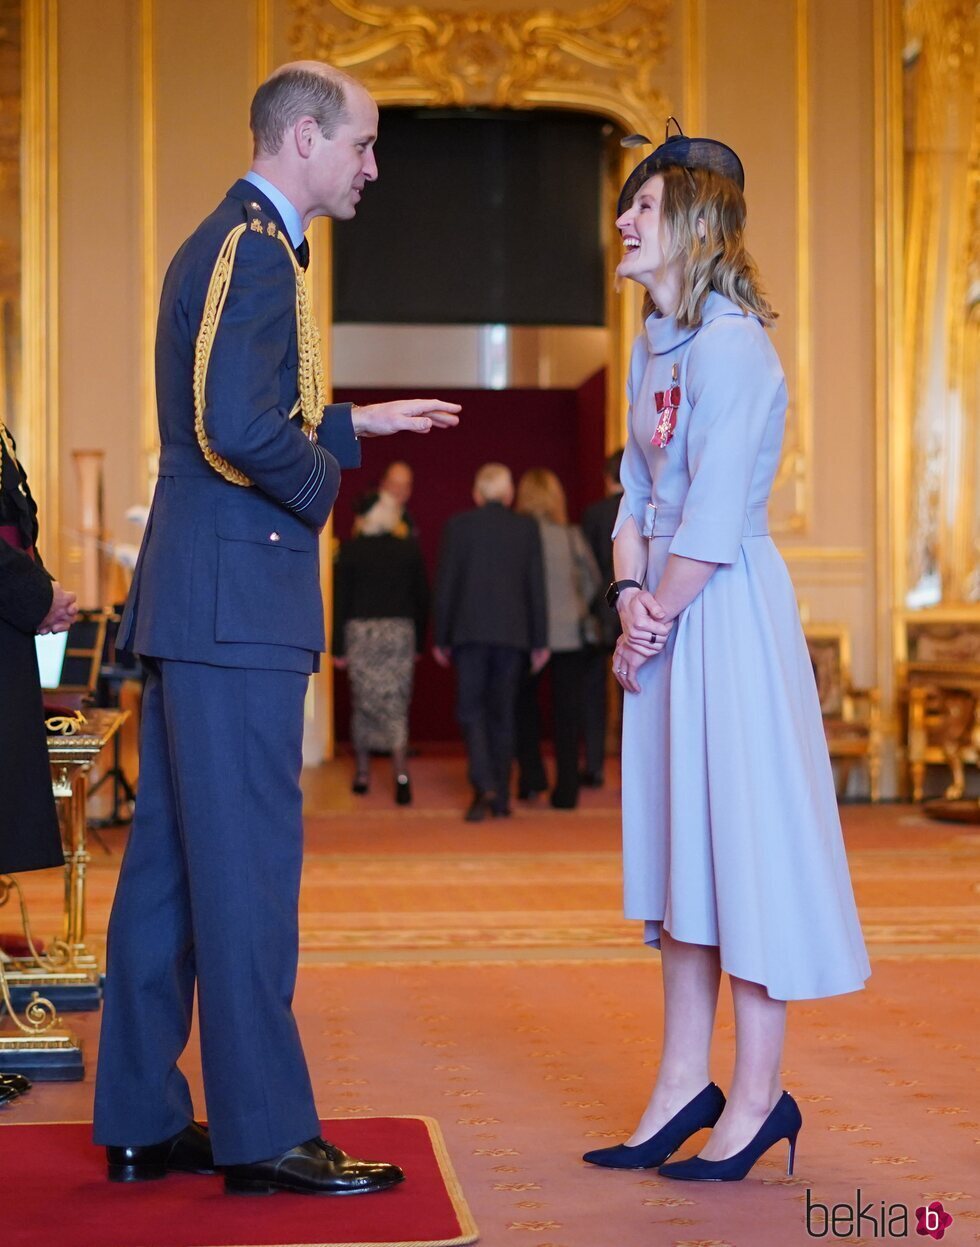 El Príncipe Guillermo condecorando a Ellen White en Windsor Castle